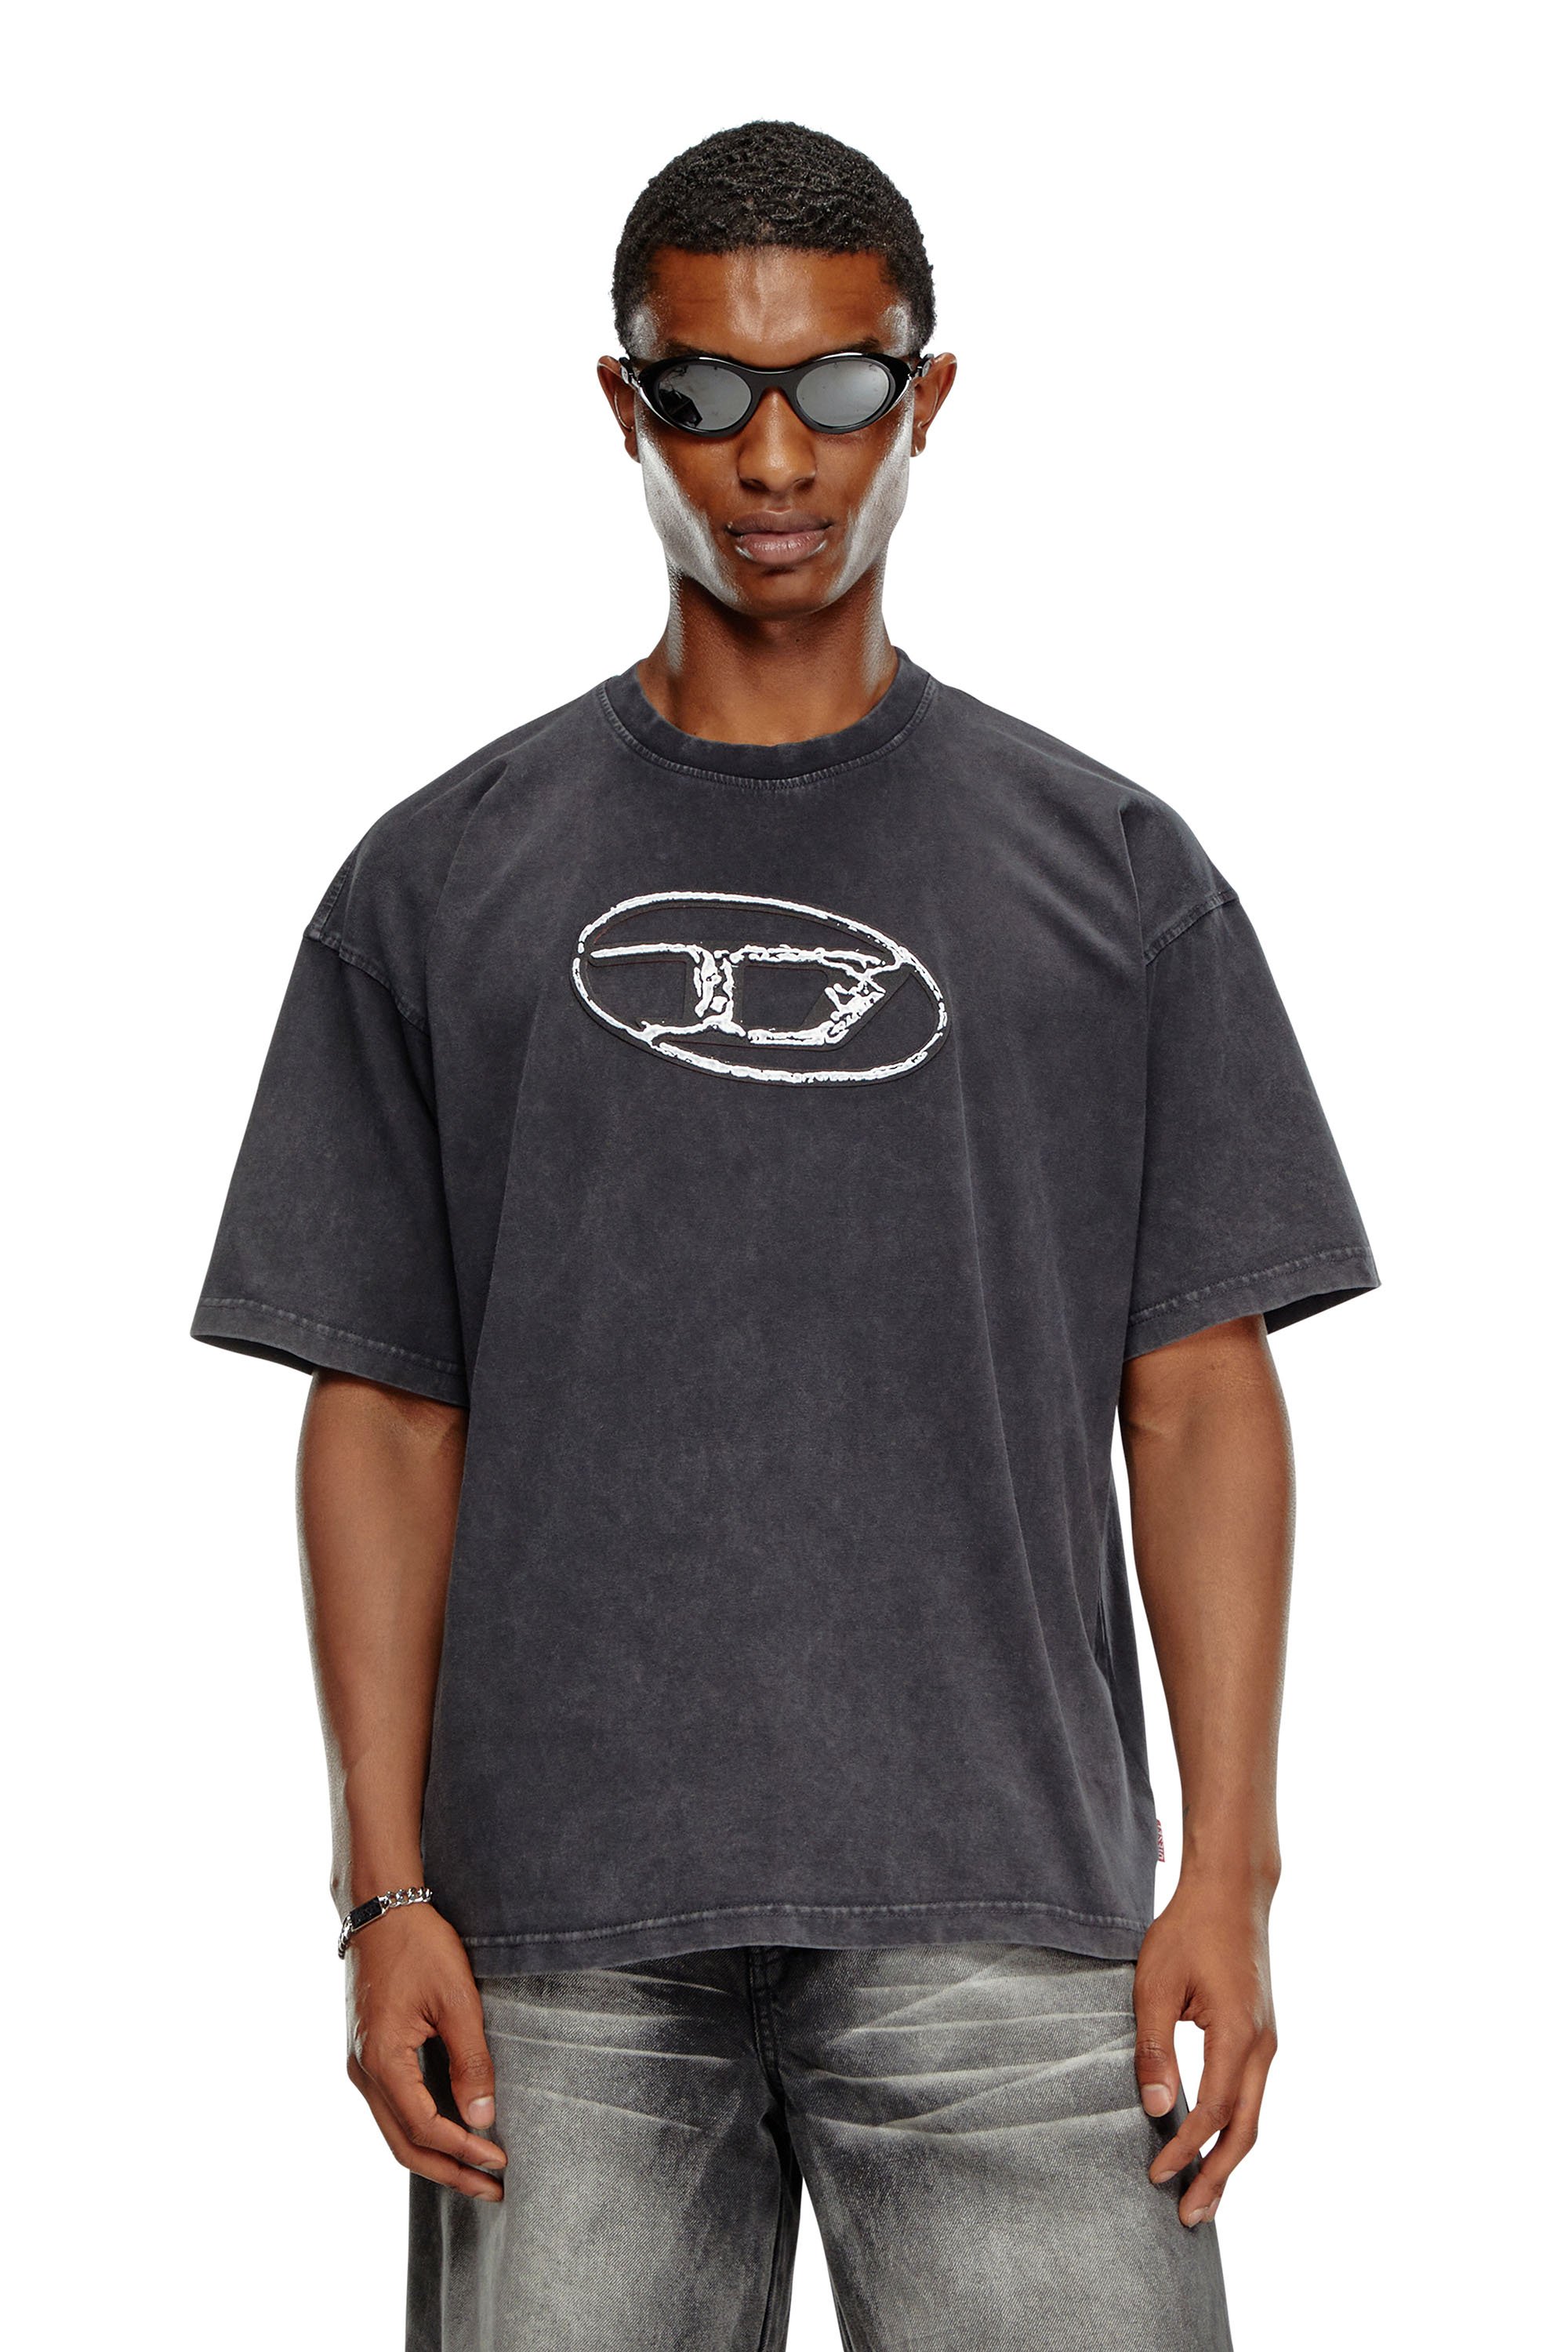 Diesel - T-BOXT-Q22, Herren Verblasstes T-Shirt mit Oval D-Print in Schwarz - Image 2